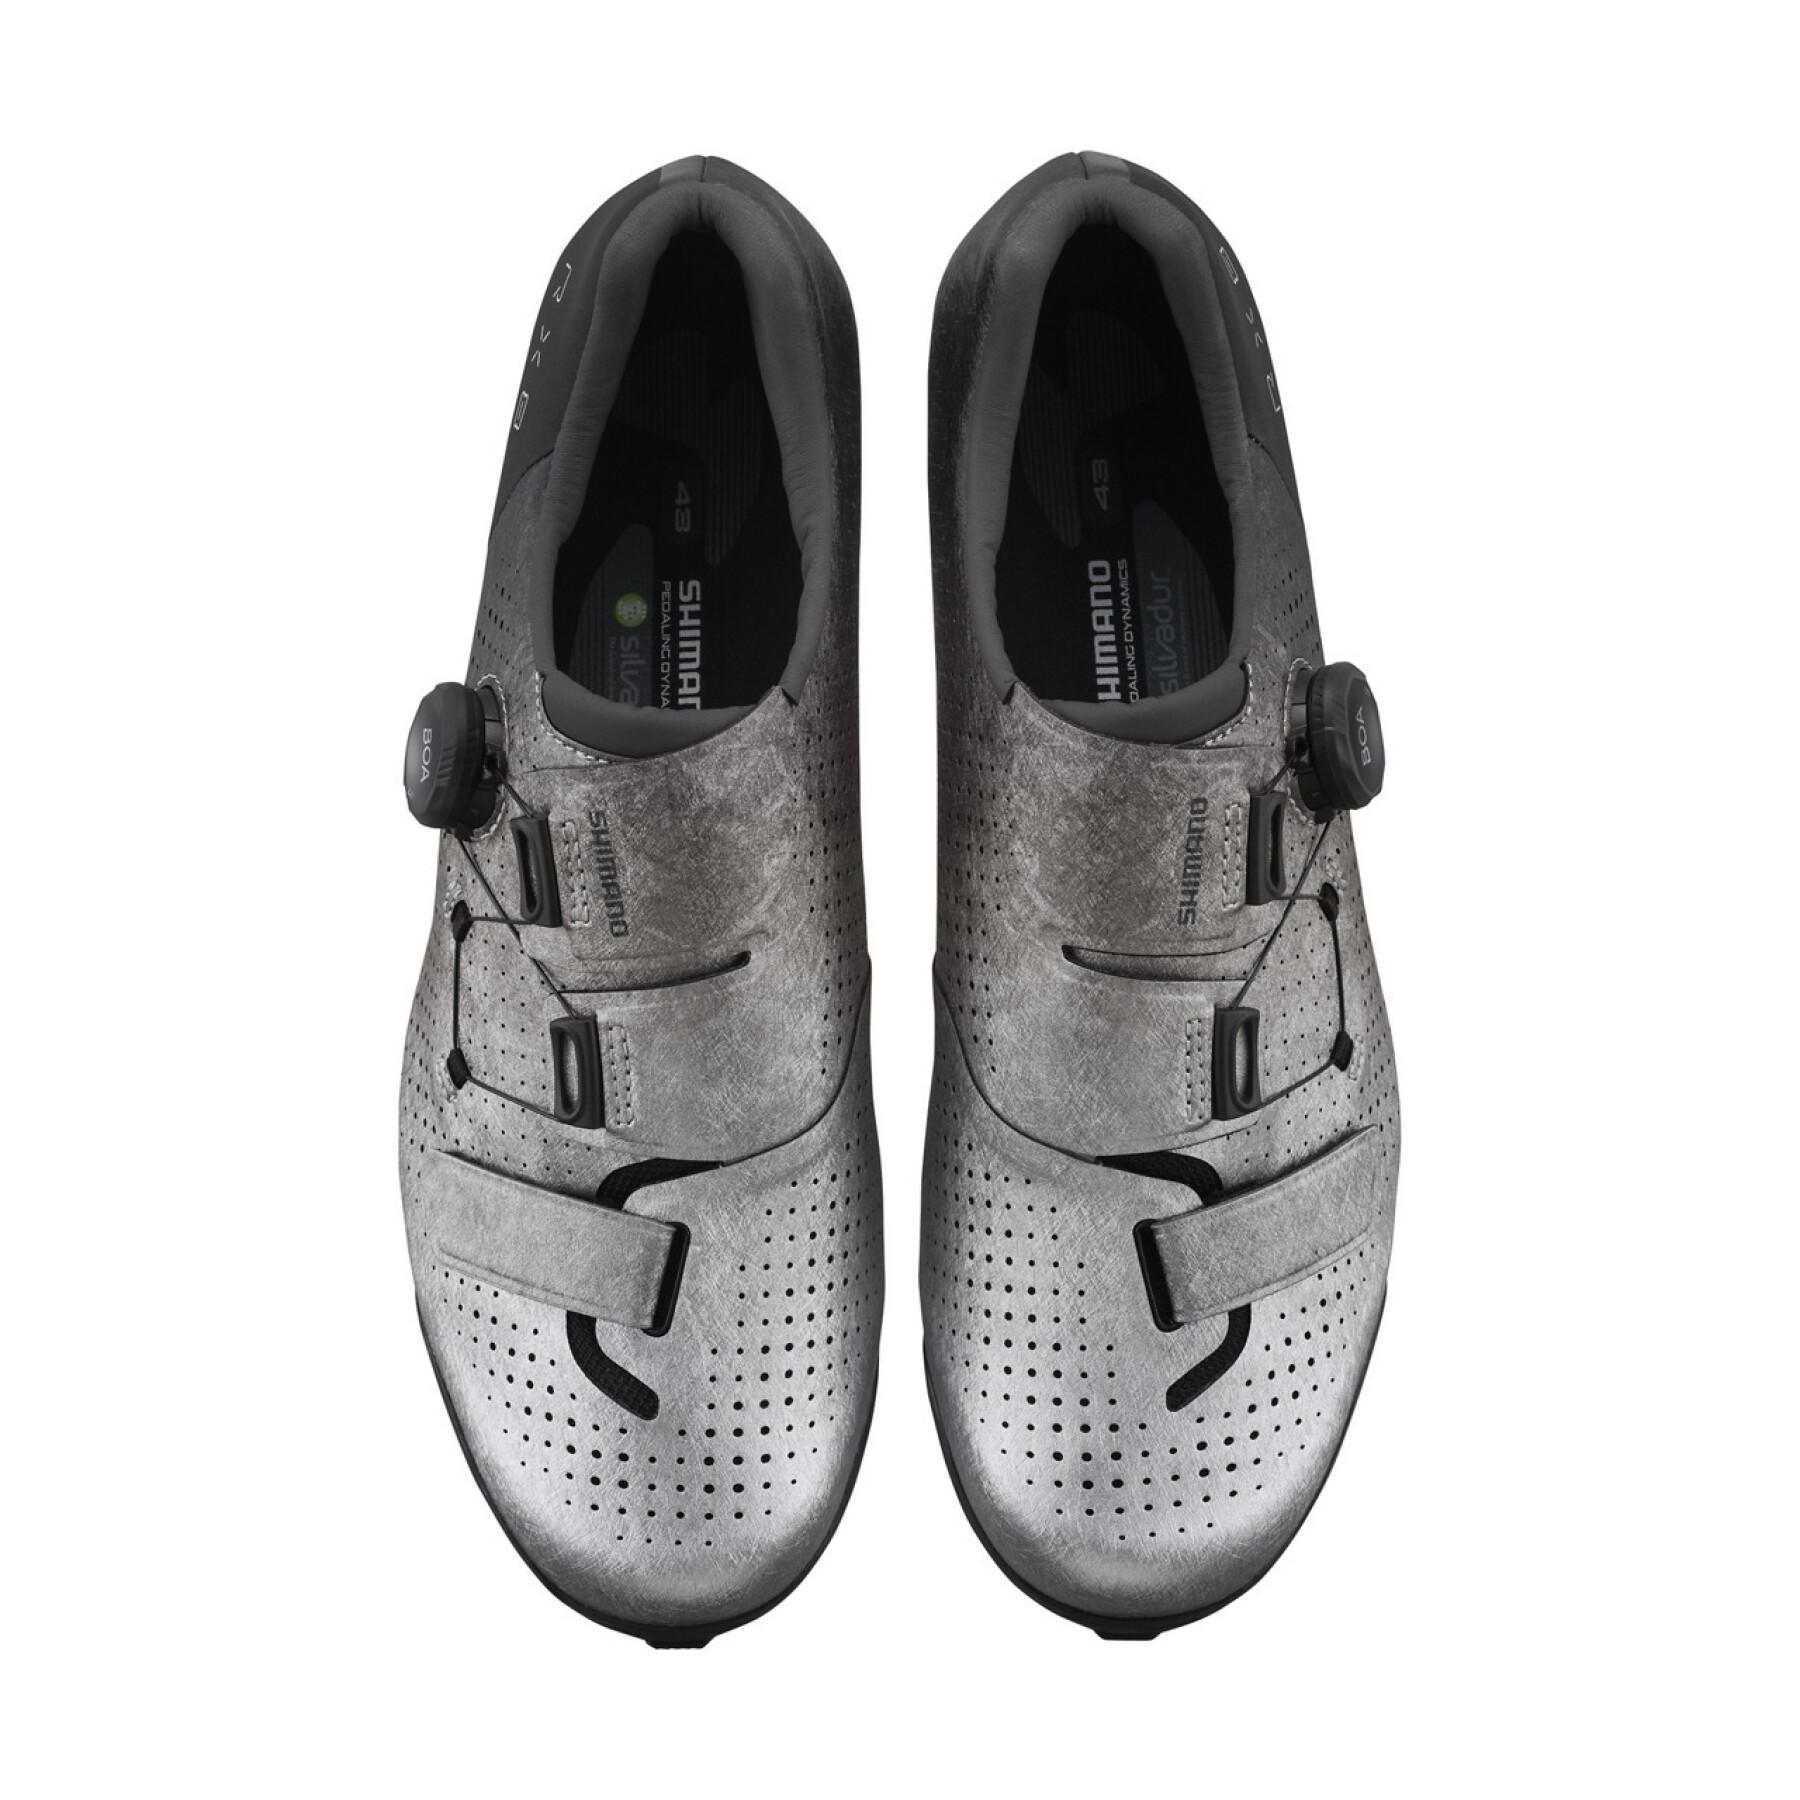 Schuhe Shimano sh-rx801